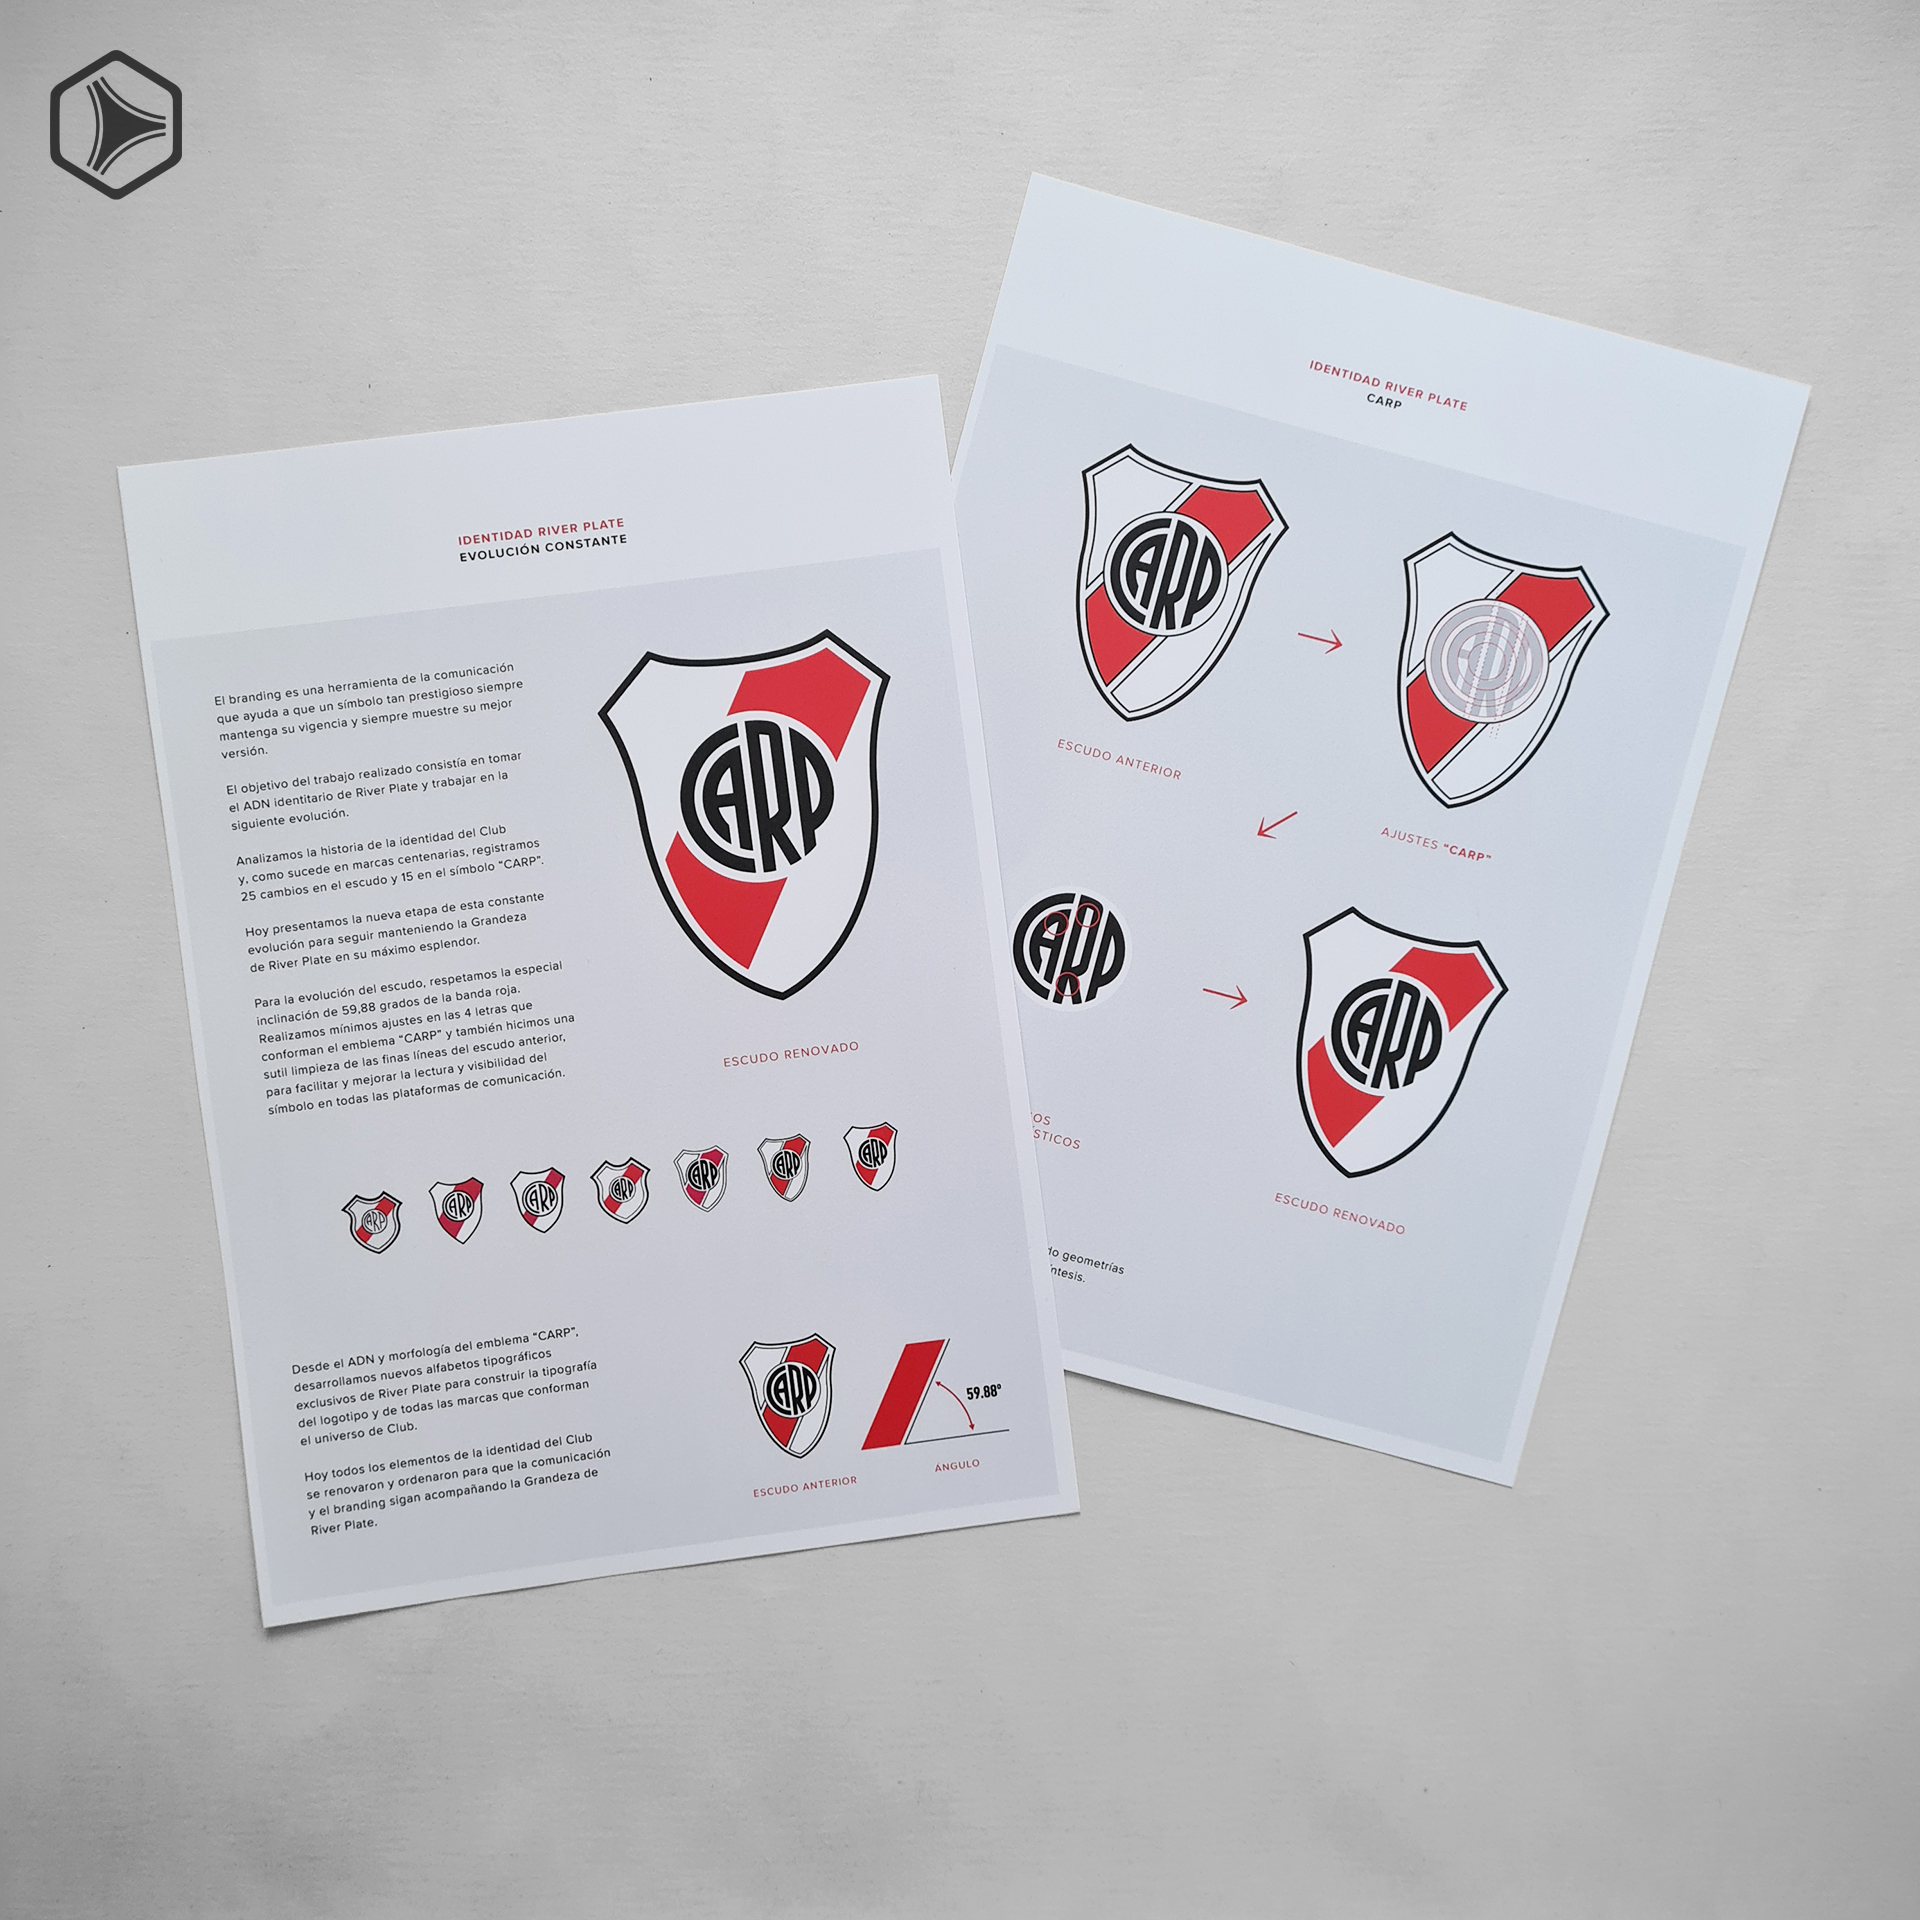 Nuevo escudo de River Plate